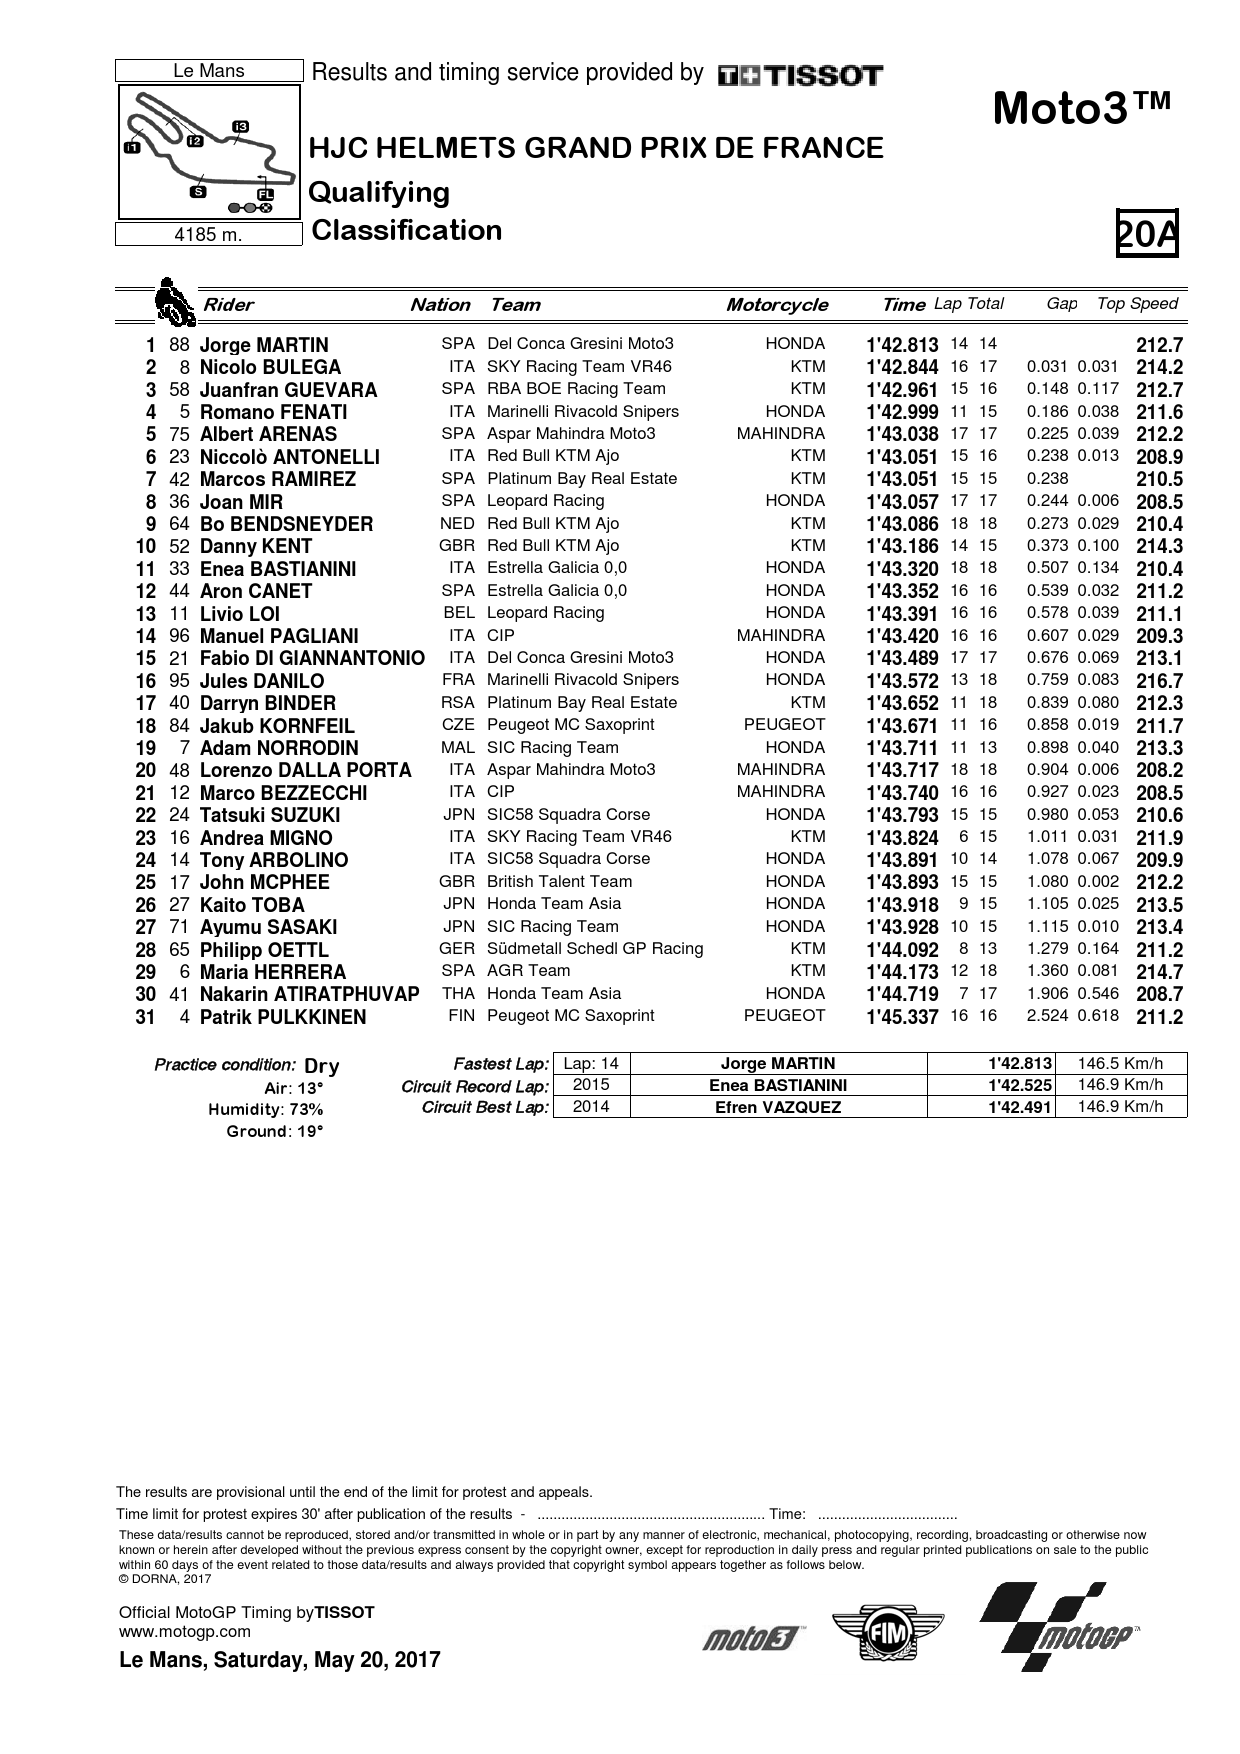 Результаты квалификации Гран-При Франции Moto3